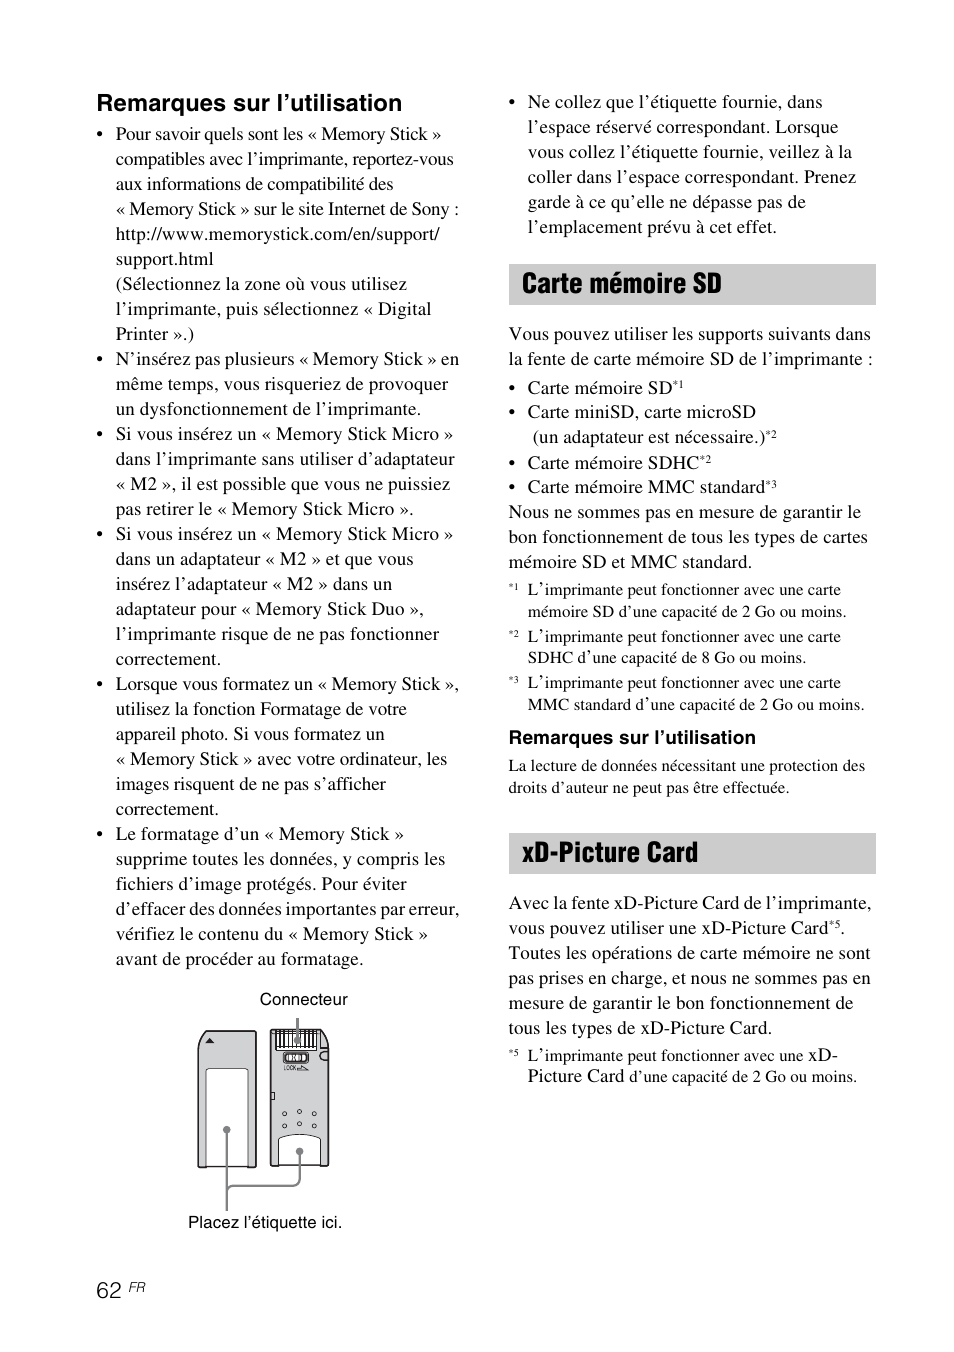 Carte mémoire sd, Xd-picture card, Carte mémoire sd xd-picture card | Remarques sur l’utilisation | Sony DPP-FP65 Manuel d'utilisation | Page 62 / 72